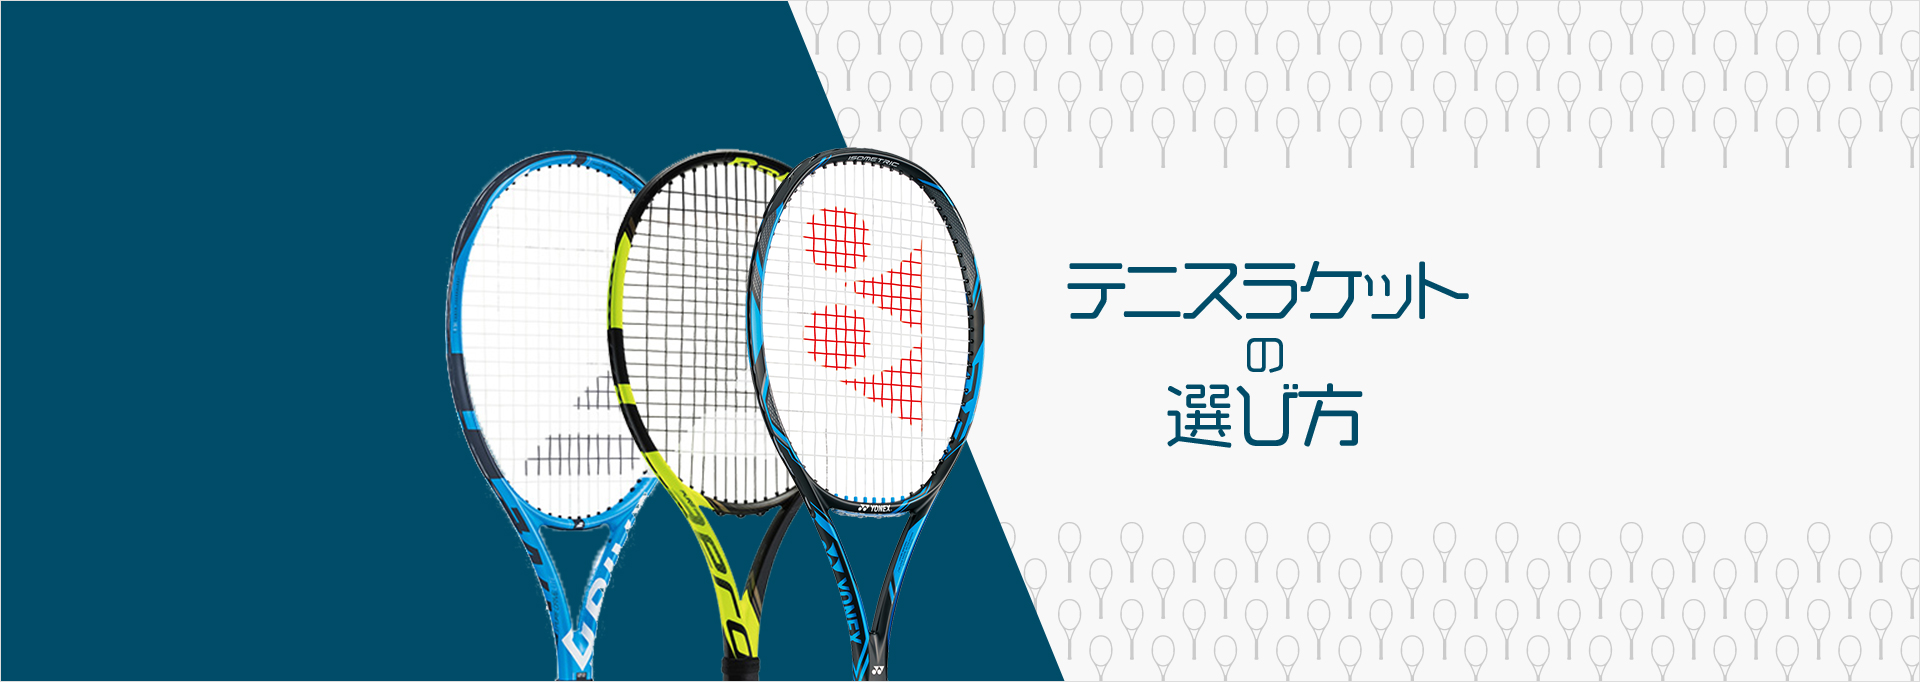 テニスラケット 硬式 の選び方 テニスグッズの選び方 テニス365 Tennis365 Net